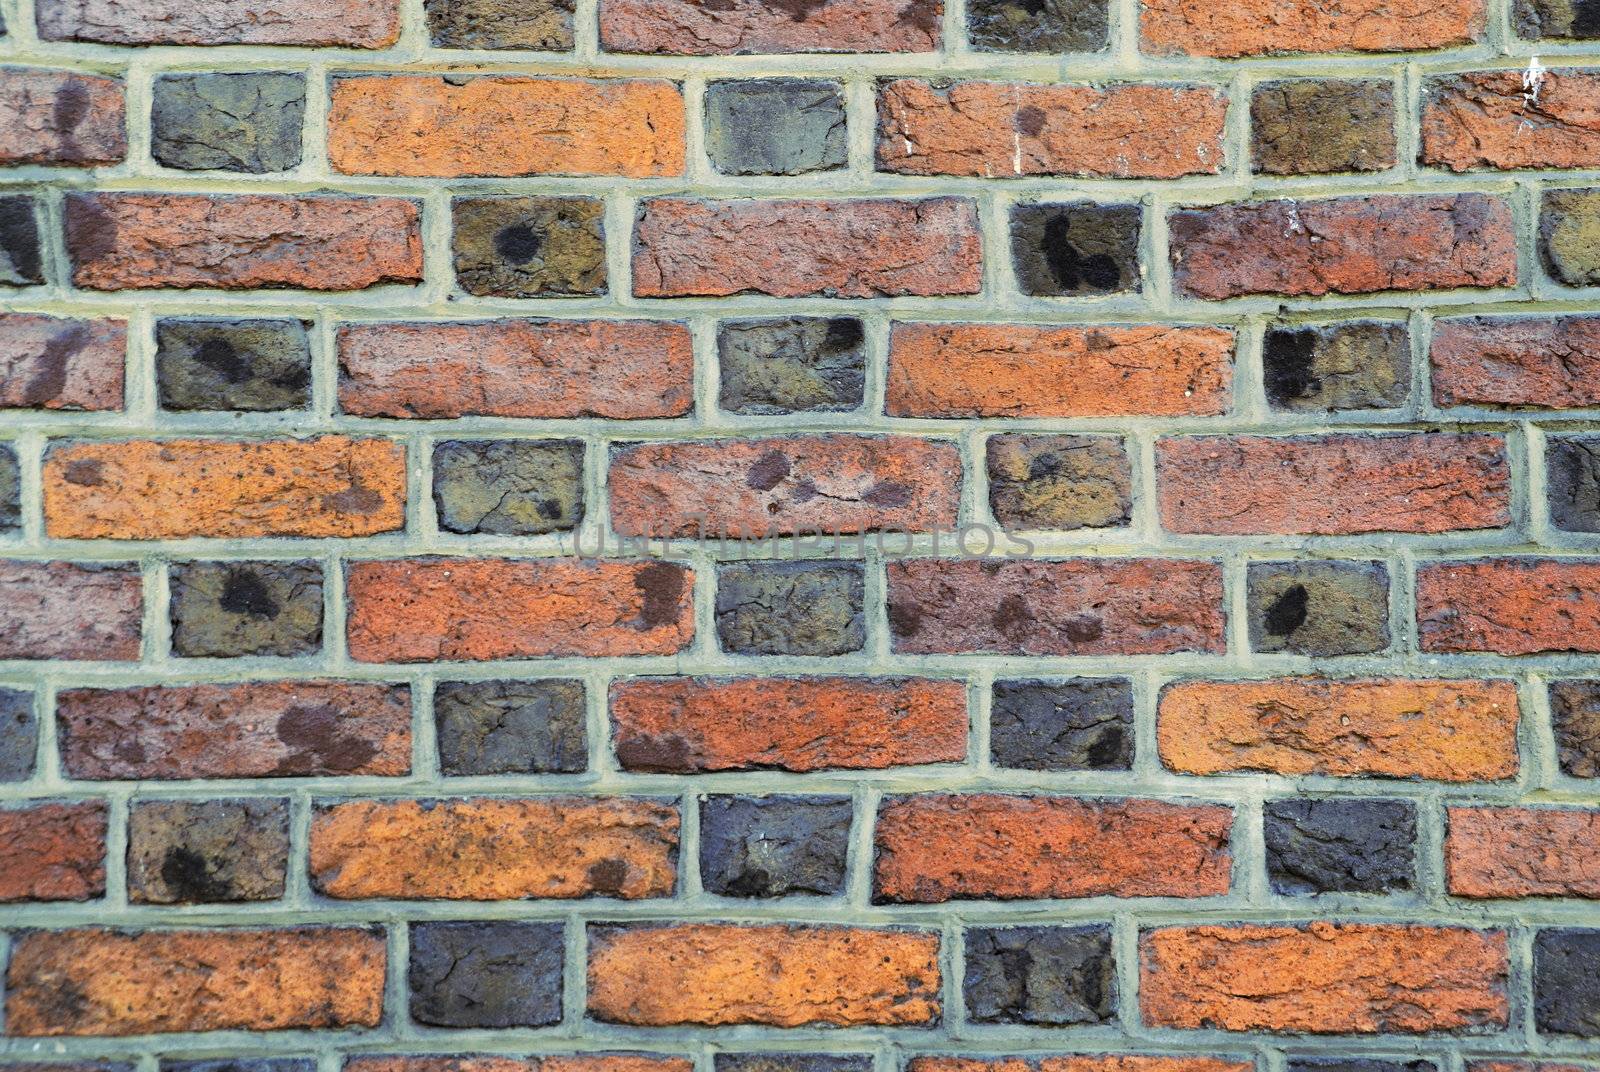 parti-colored brick wall